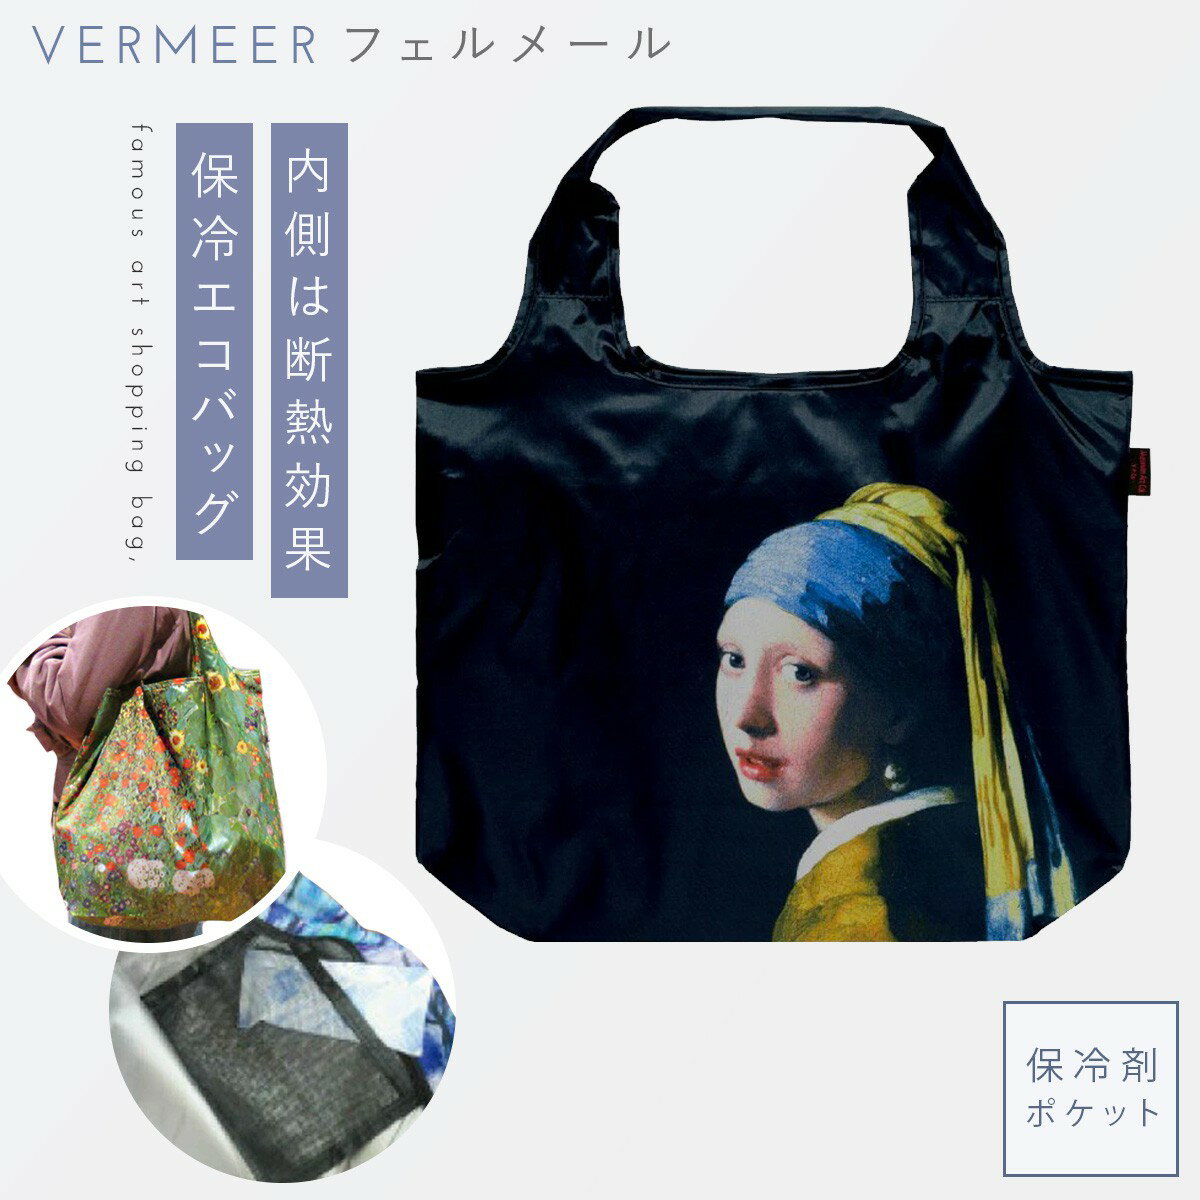 ۗobO GRobO VbsOobO t@Xi[t ۗ܃|Pbg TuobO e    tF[ Vermeer ^[ȍ A[g `[t ObY l 킢 X[p[ Rrj N[[GRobO tF[ Vermeer